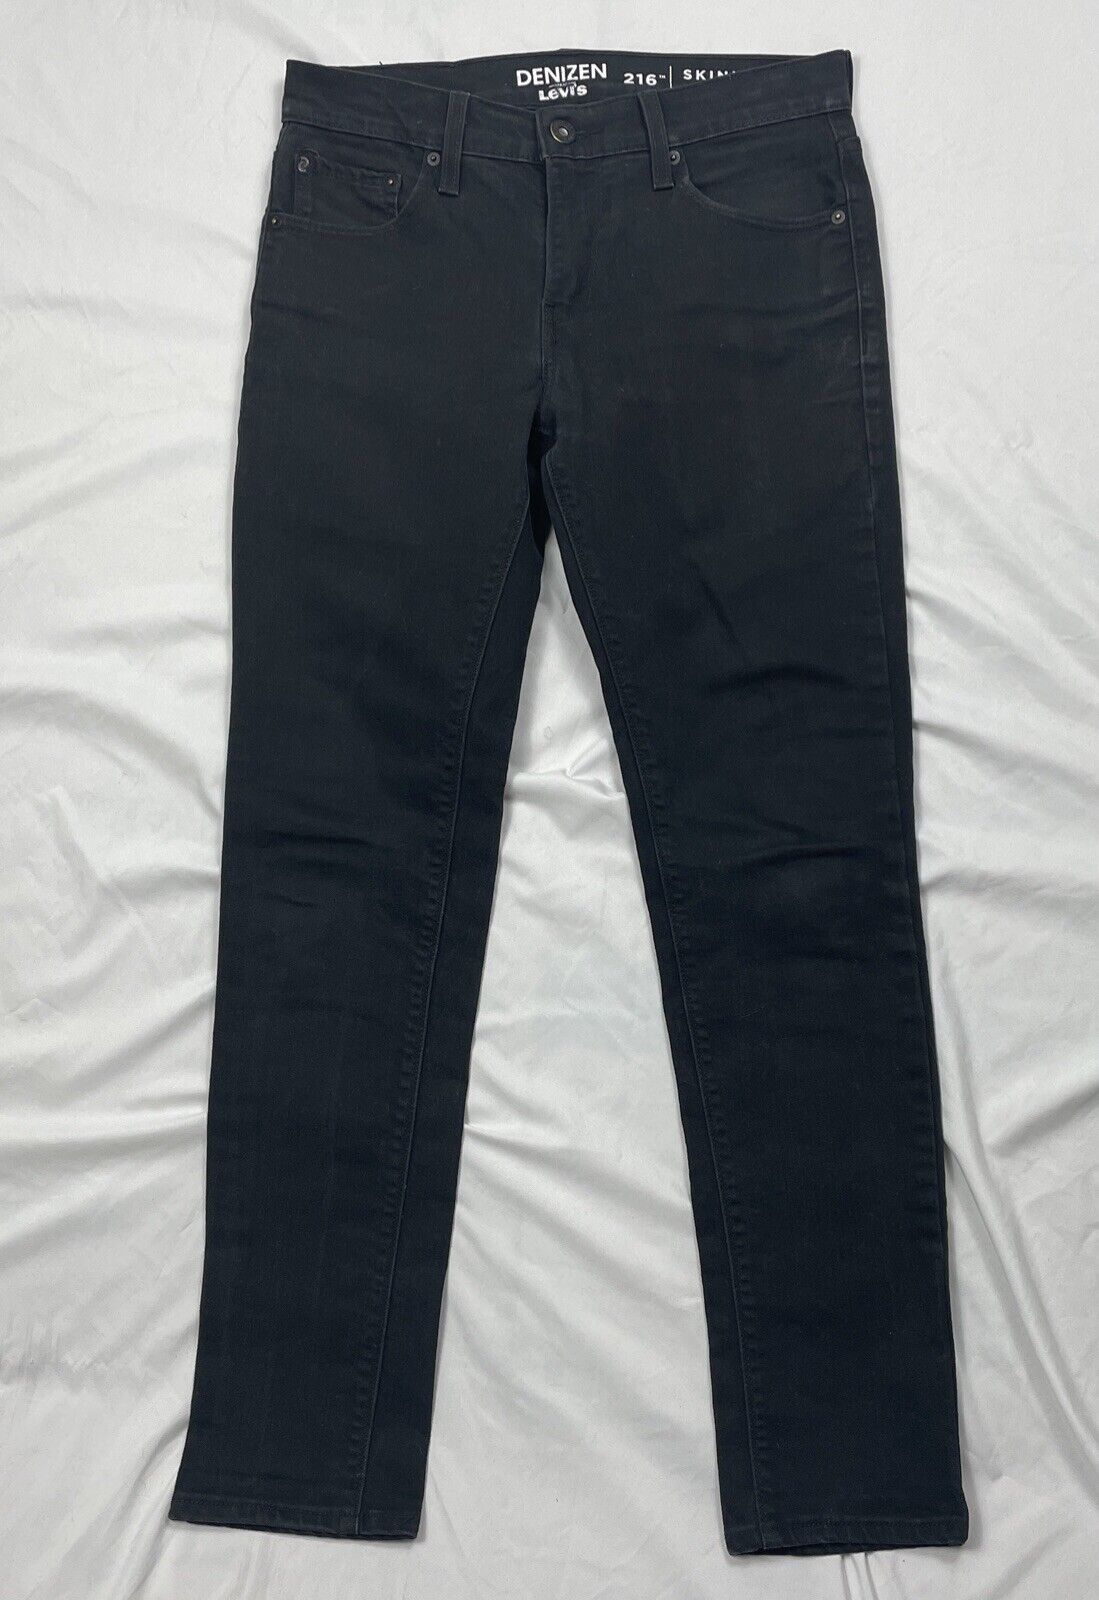 Denizen From Levis 216 Jeans Men's Sz. W30 L32 Skinny Fit Black Cotton Blend